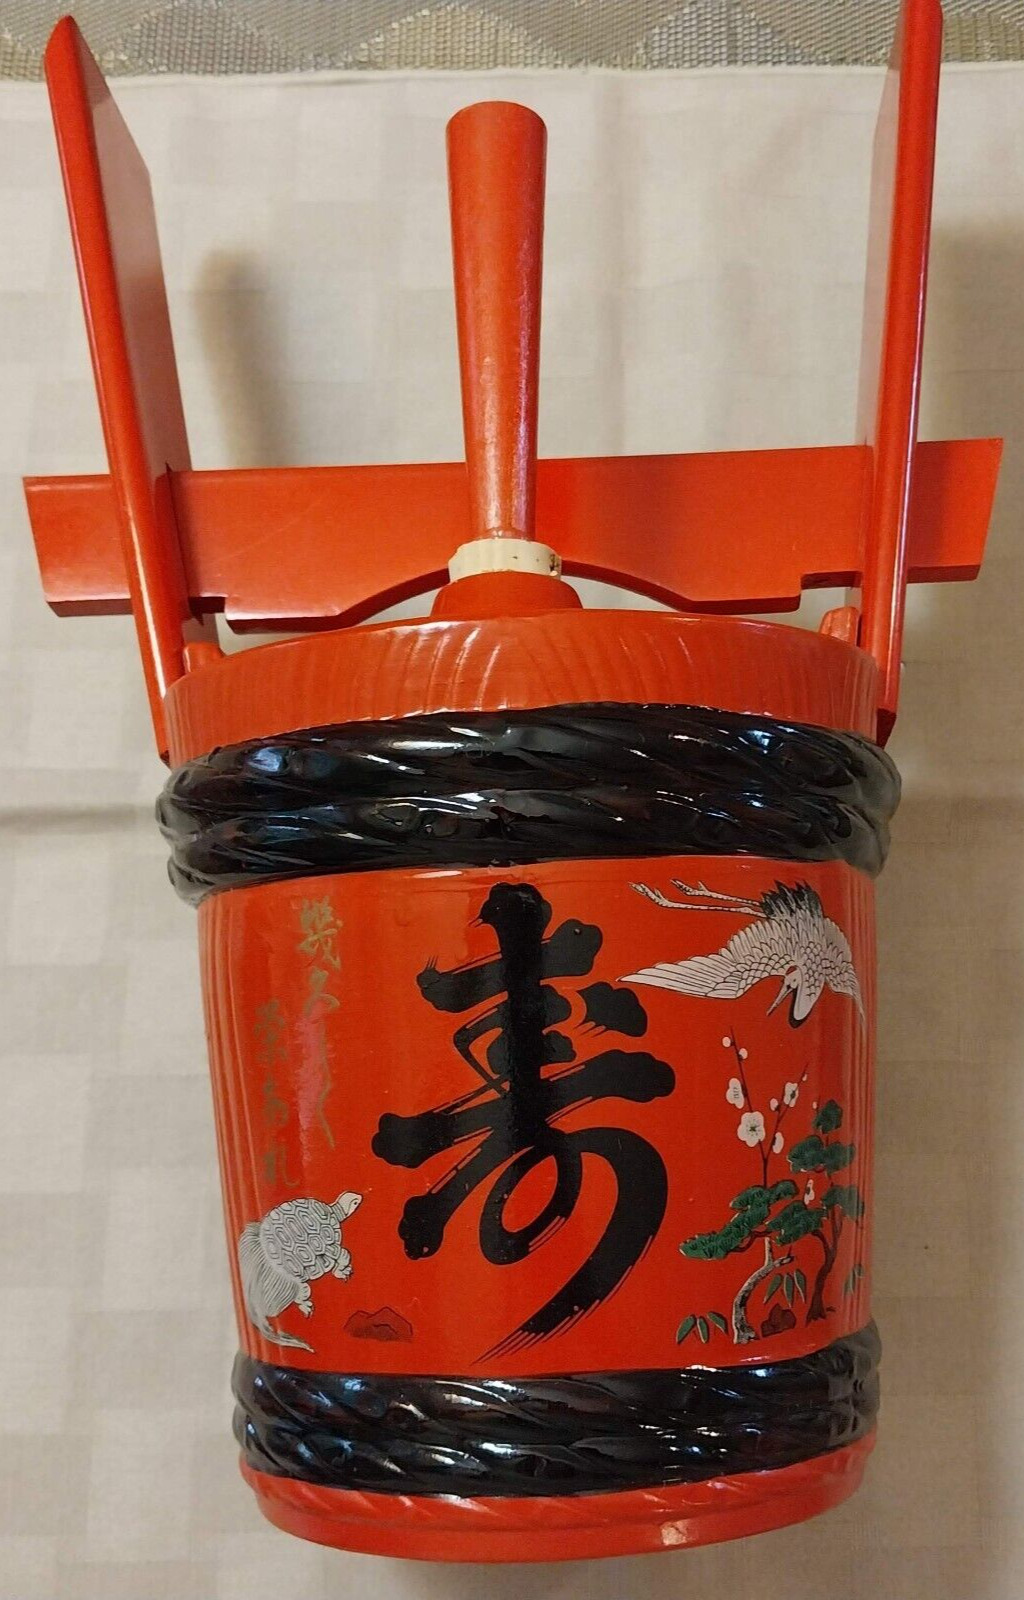 Vintage Japanese Red Sake / Wine Barrel Jug for Decorative Use. Empty